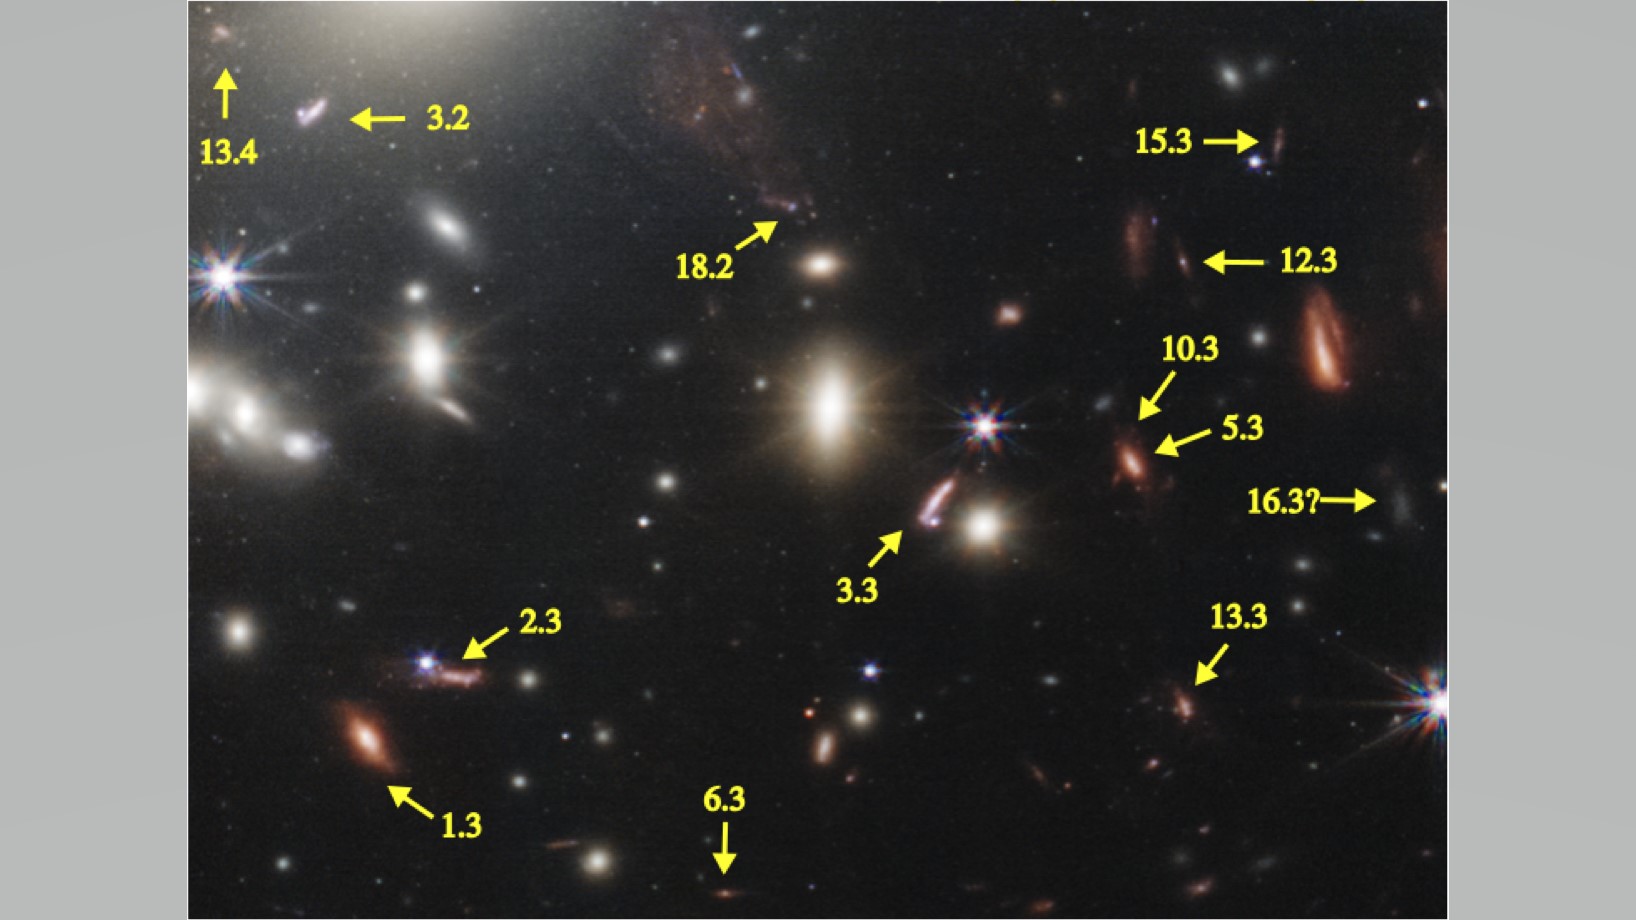 šipky ukazují na zvětšené galaxie